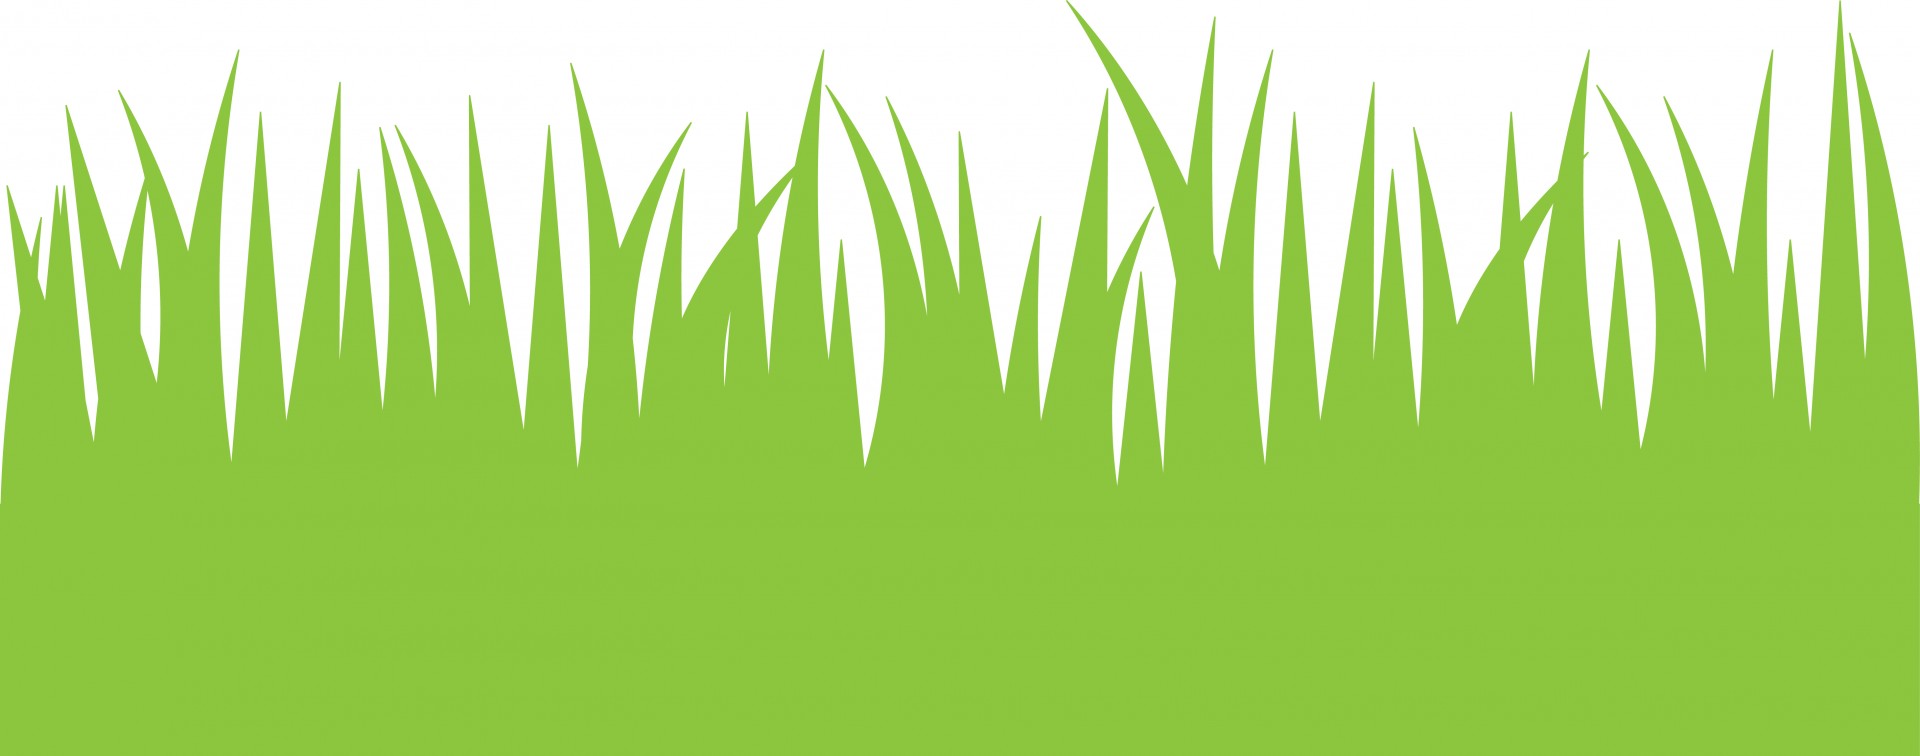 Green Grass Clipart - Green Grass Clipart